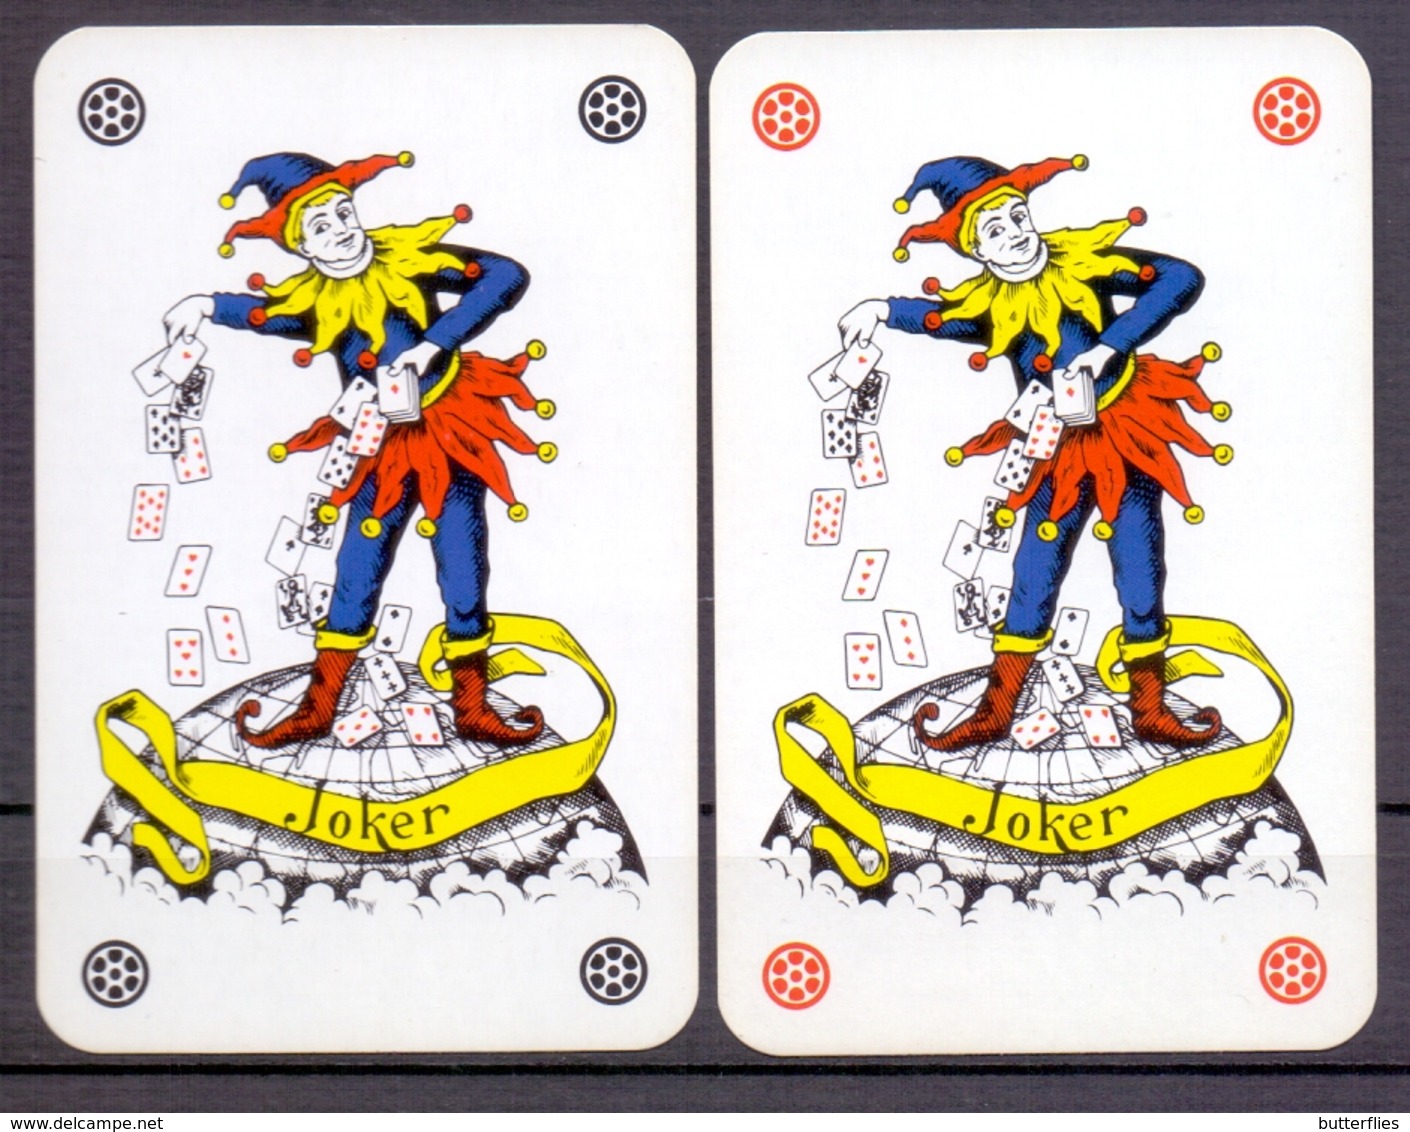 Groene bonen vorst Mededogen Playing Cards (classic) - Belgie - Speelkaarten - ** 2 Jokers - Dag van de  Klant **